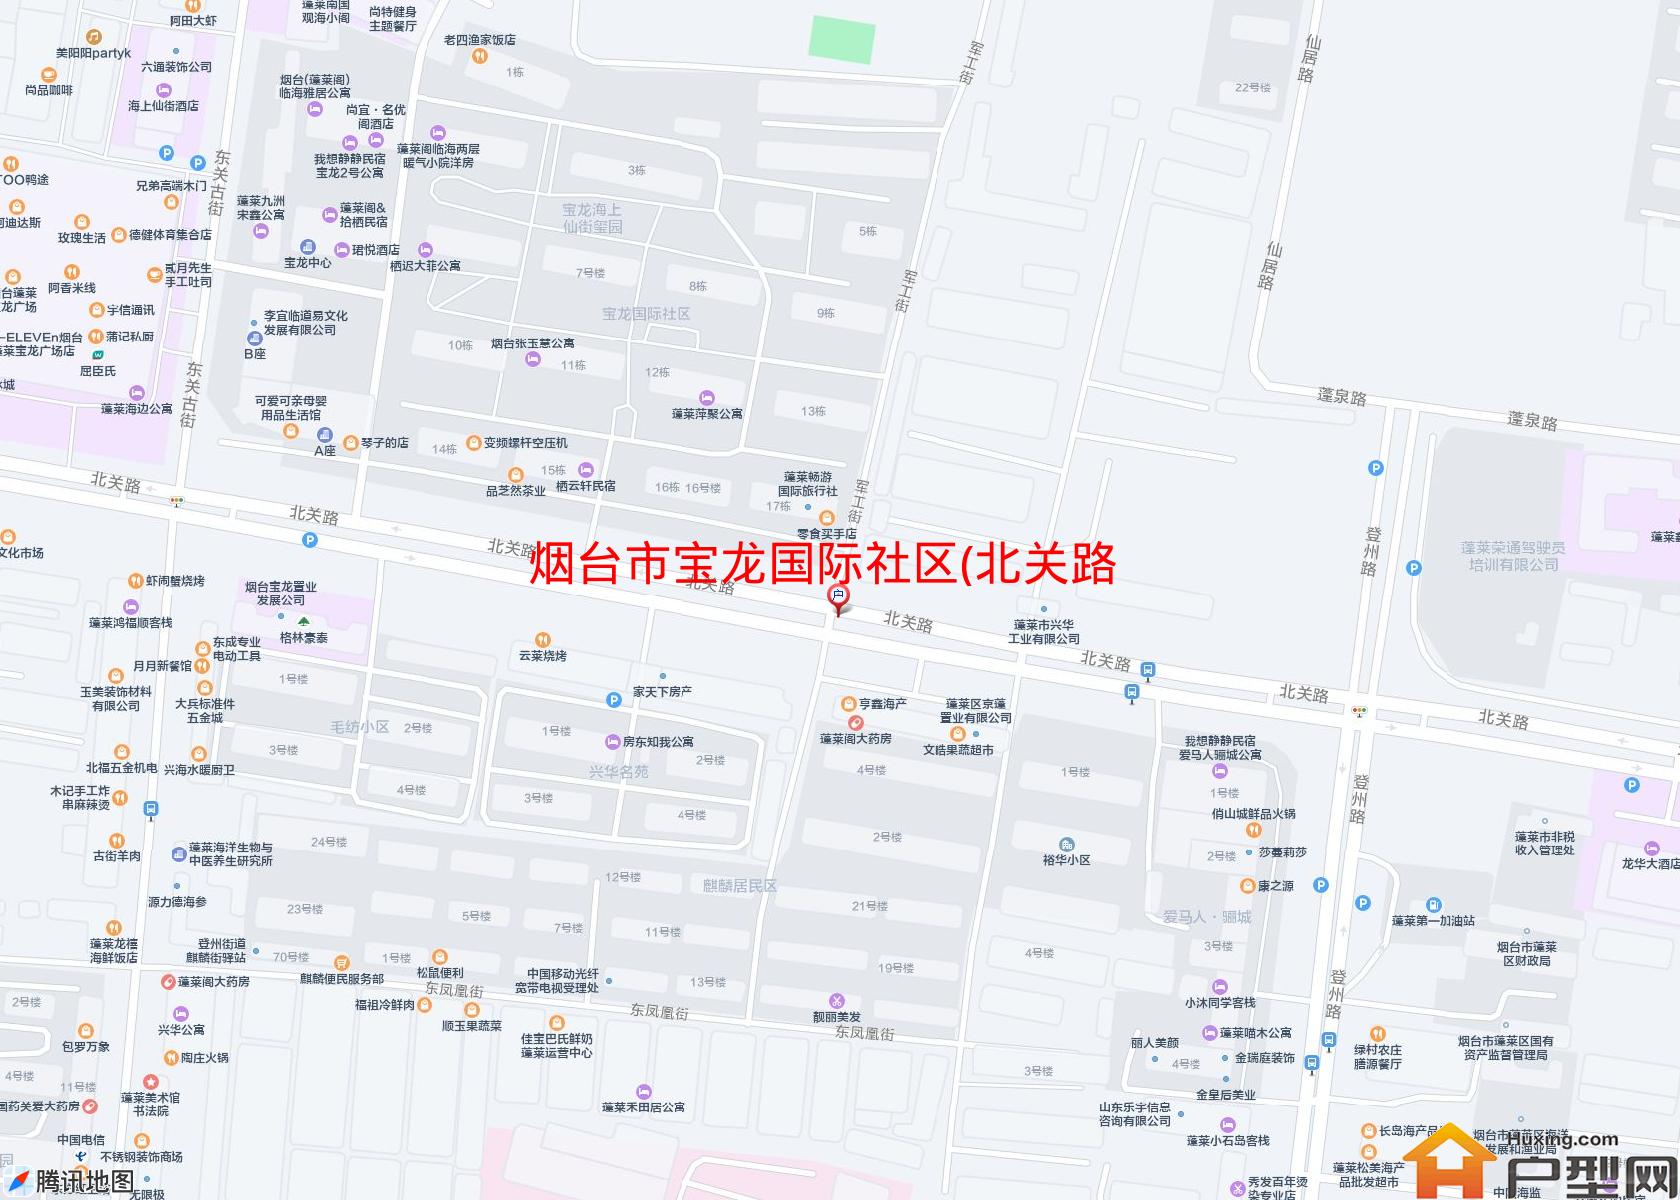 宝龙国际社区(北关路)小区 - 户型网